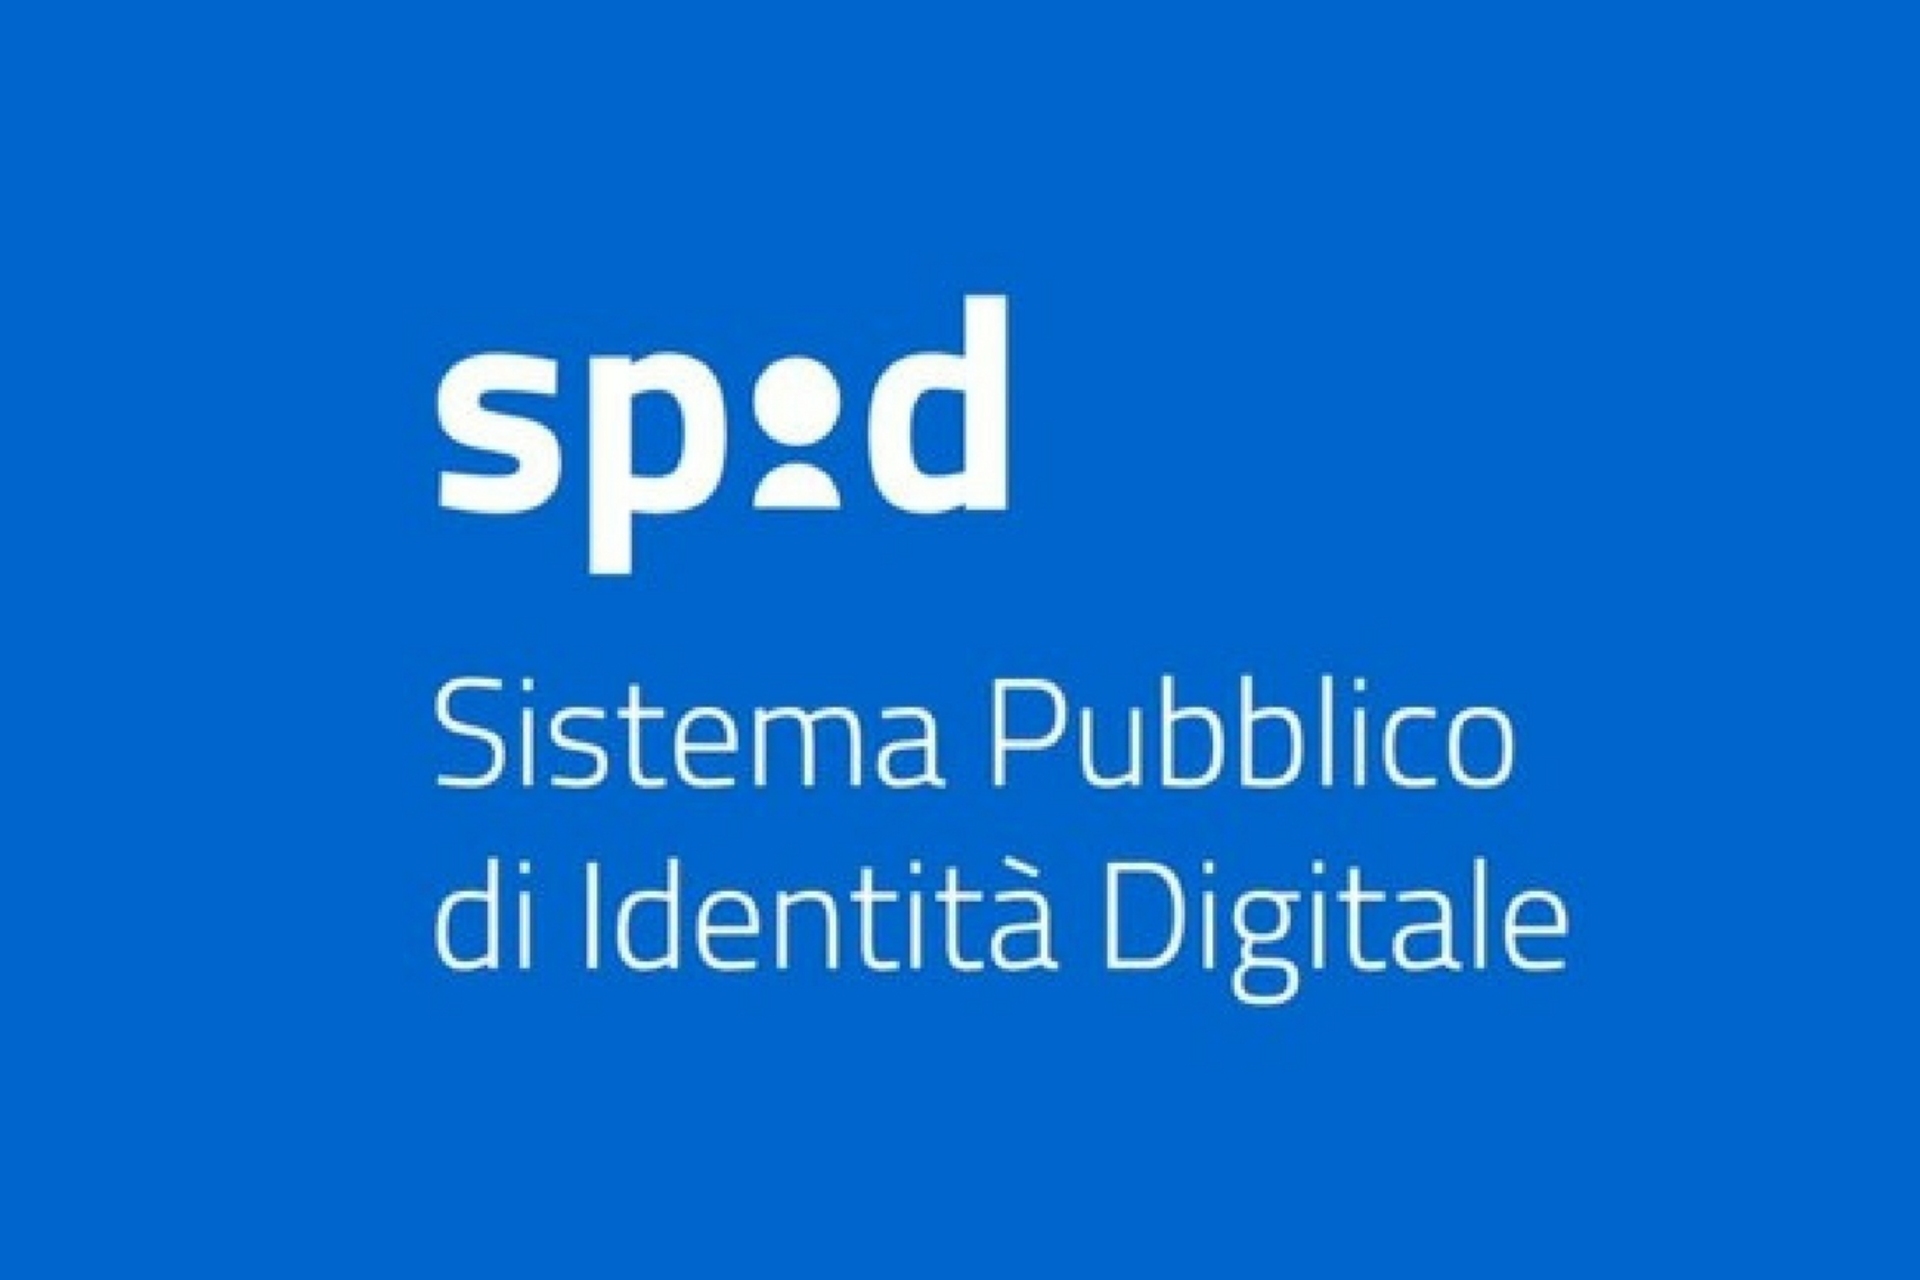 Tekniikka: Public Digital Identity System (SPID) ei aina sovellu iäkkäille ihmisille